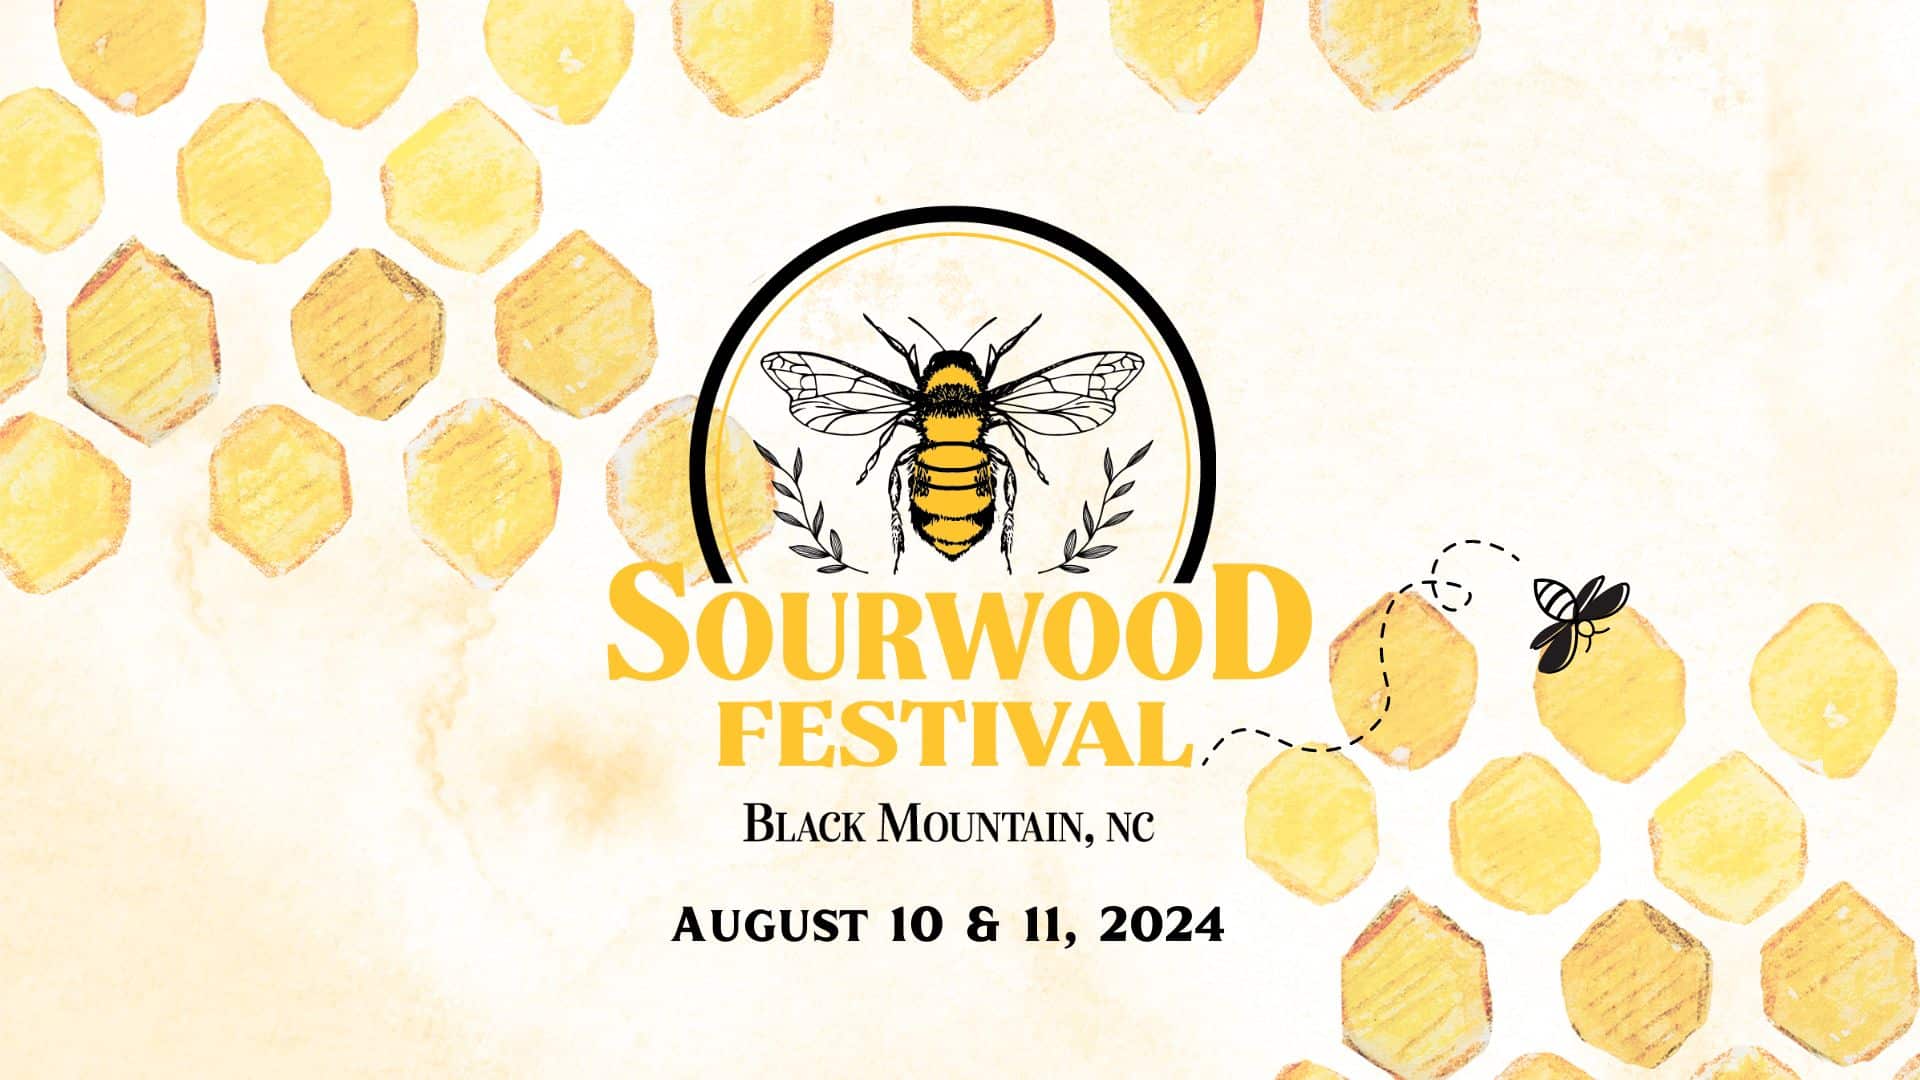 A Sneak Peek into the 2024 Sourwood Festival in Black Mountain